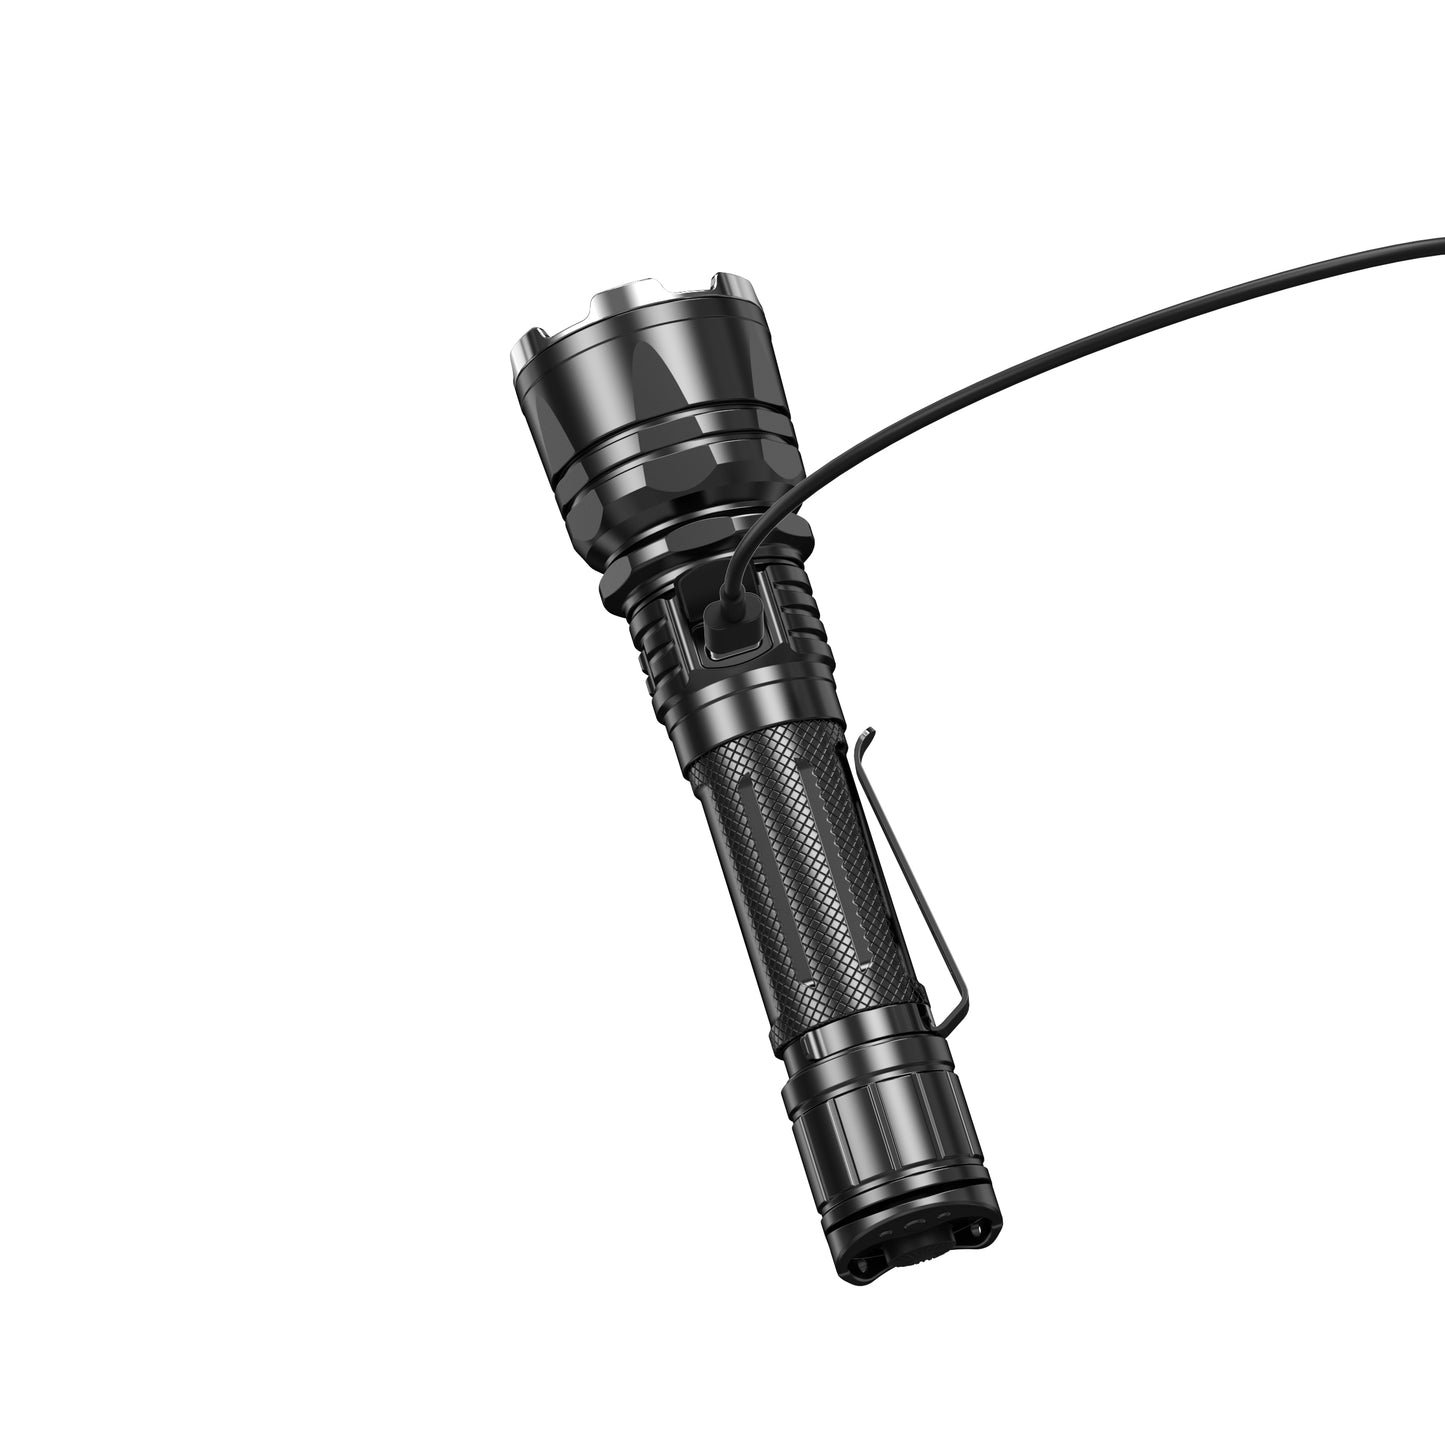 LED Taschenlampe XT12GT PRO, 1'600 Lumen (inkl. Akku)